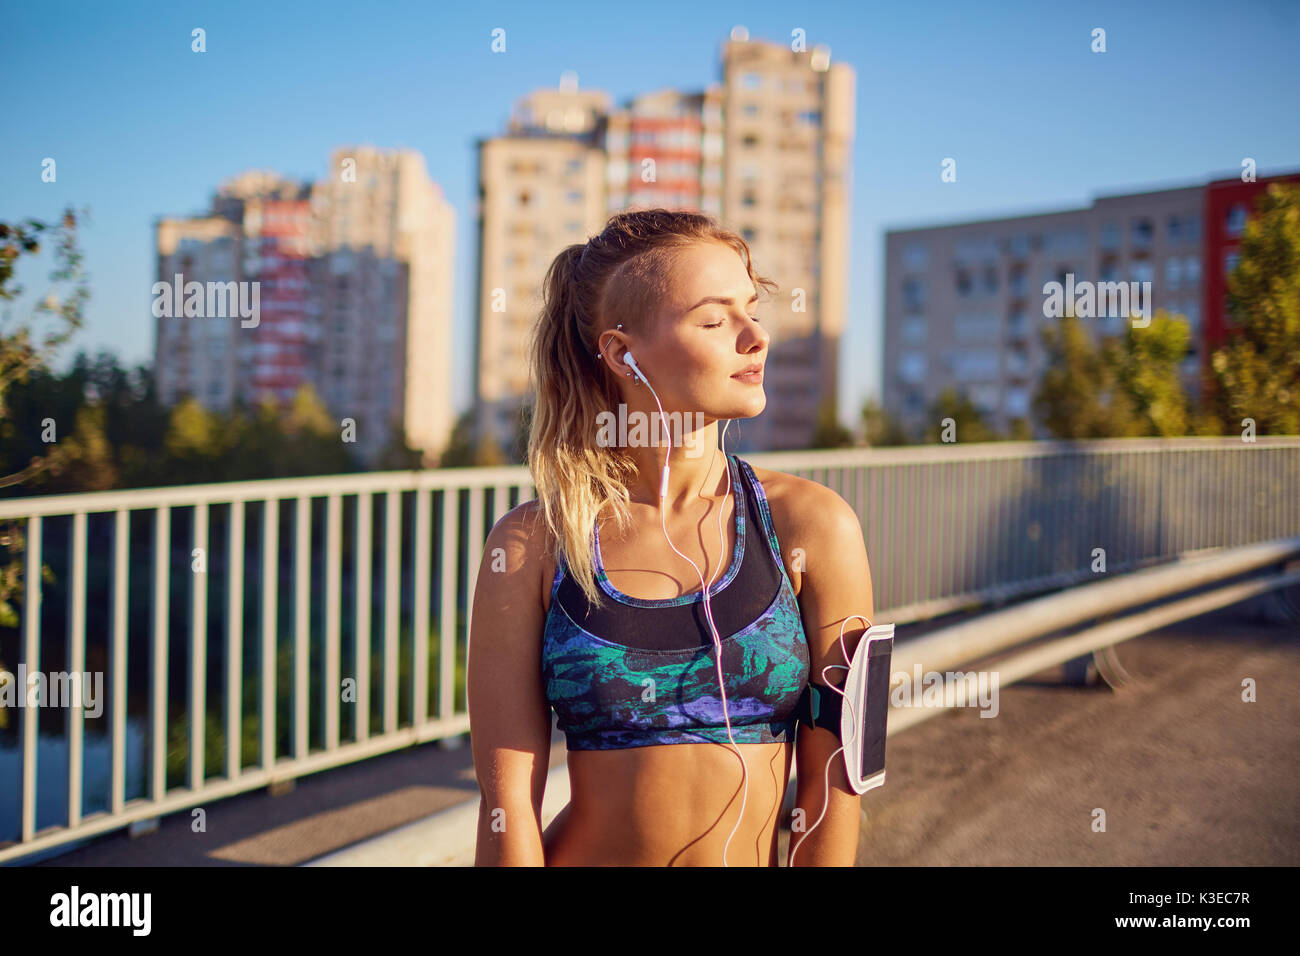 Ein Mädchen läuft in Kopfhörer auf einer Brücke in der Stadt in der morn Stockfoto